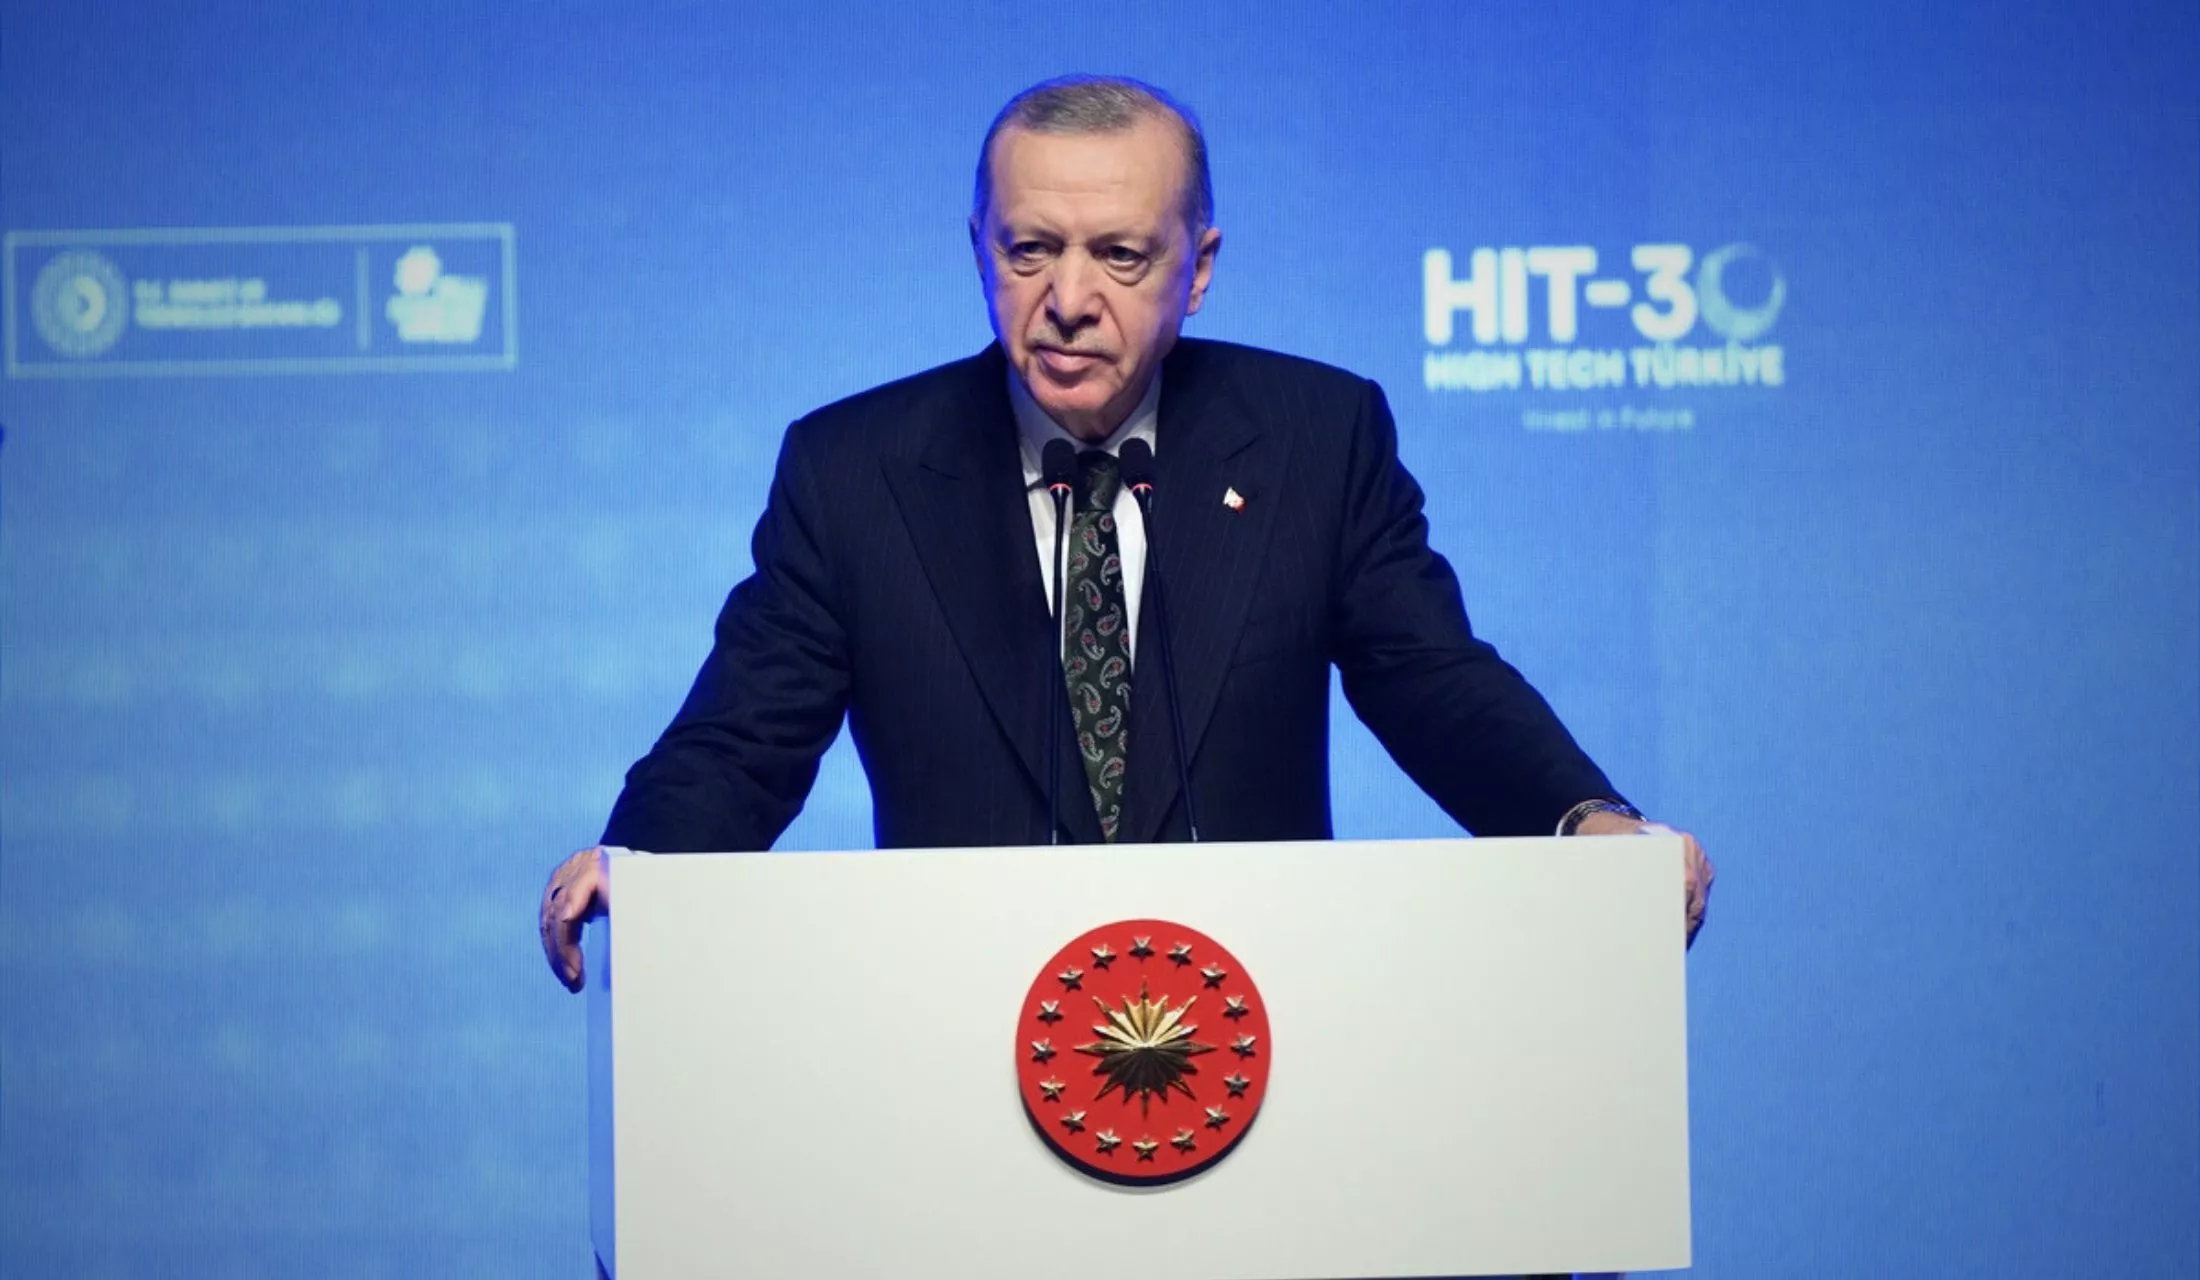 Cumhurbaşkanı Erdoğan Yüksek Teknoloji Yatırımları İçin 30 Milyar Dolarlık Teşvik Programı Başlatıyoruz